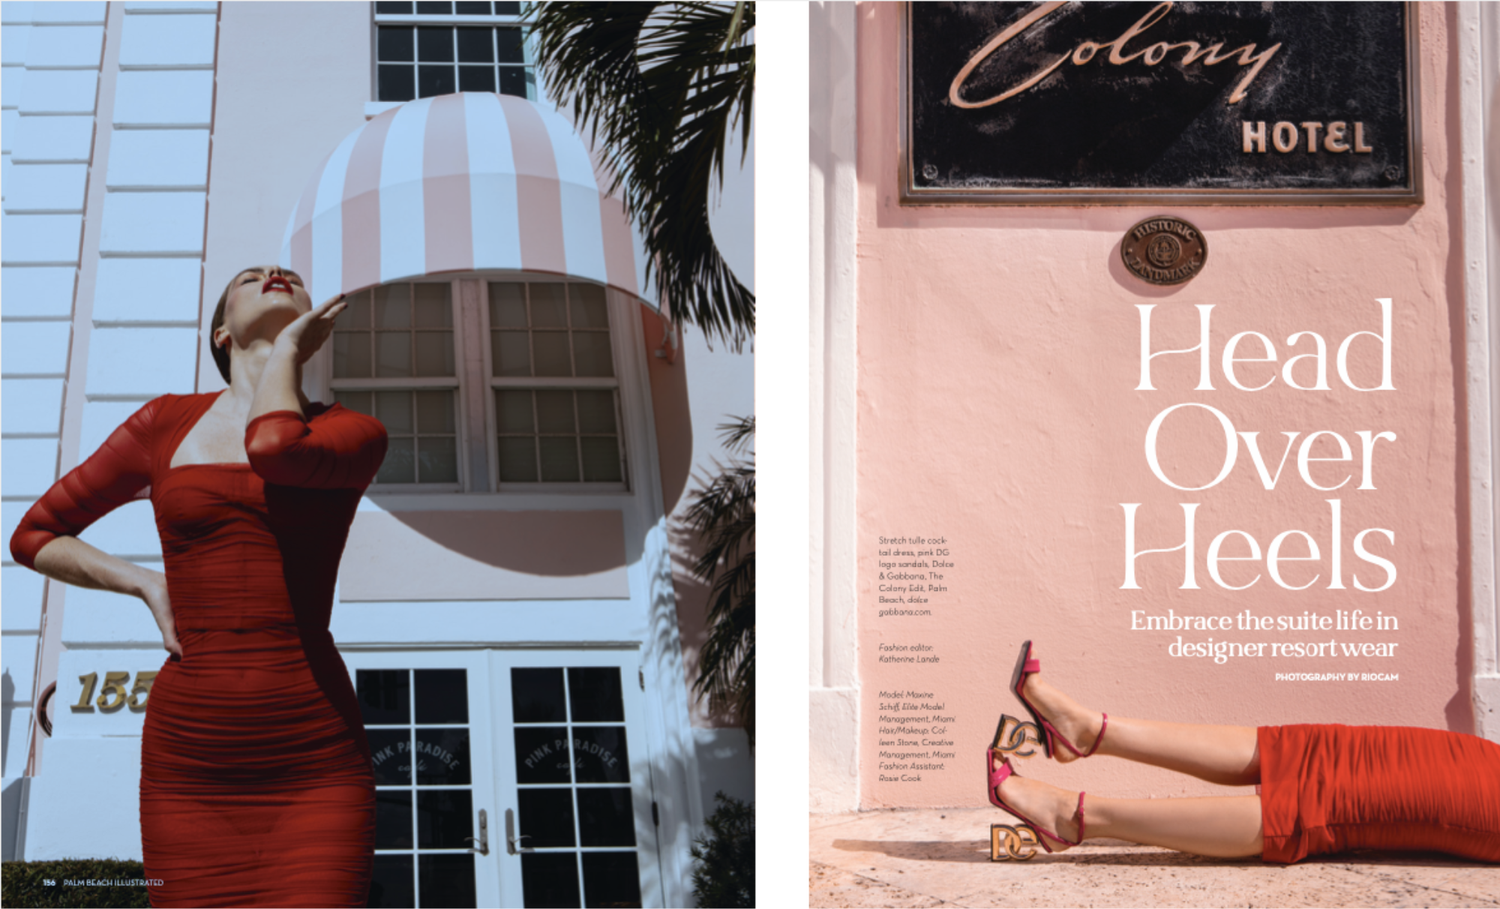 Florida's Palm Beaches Shine - VIE Magazine